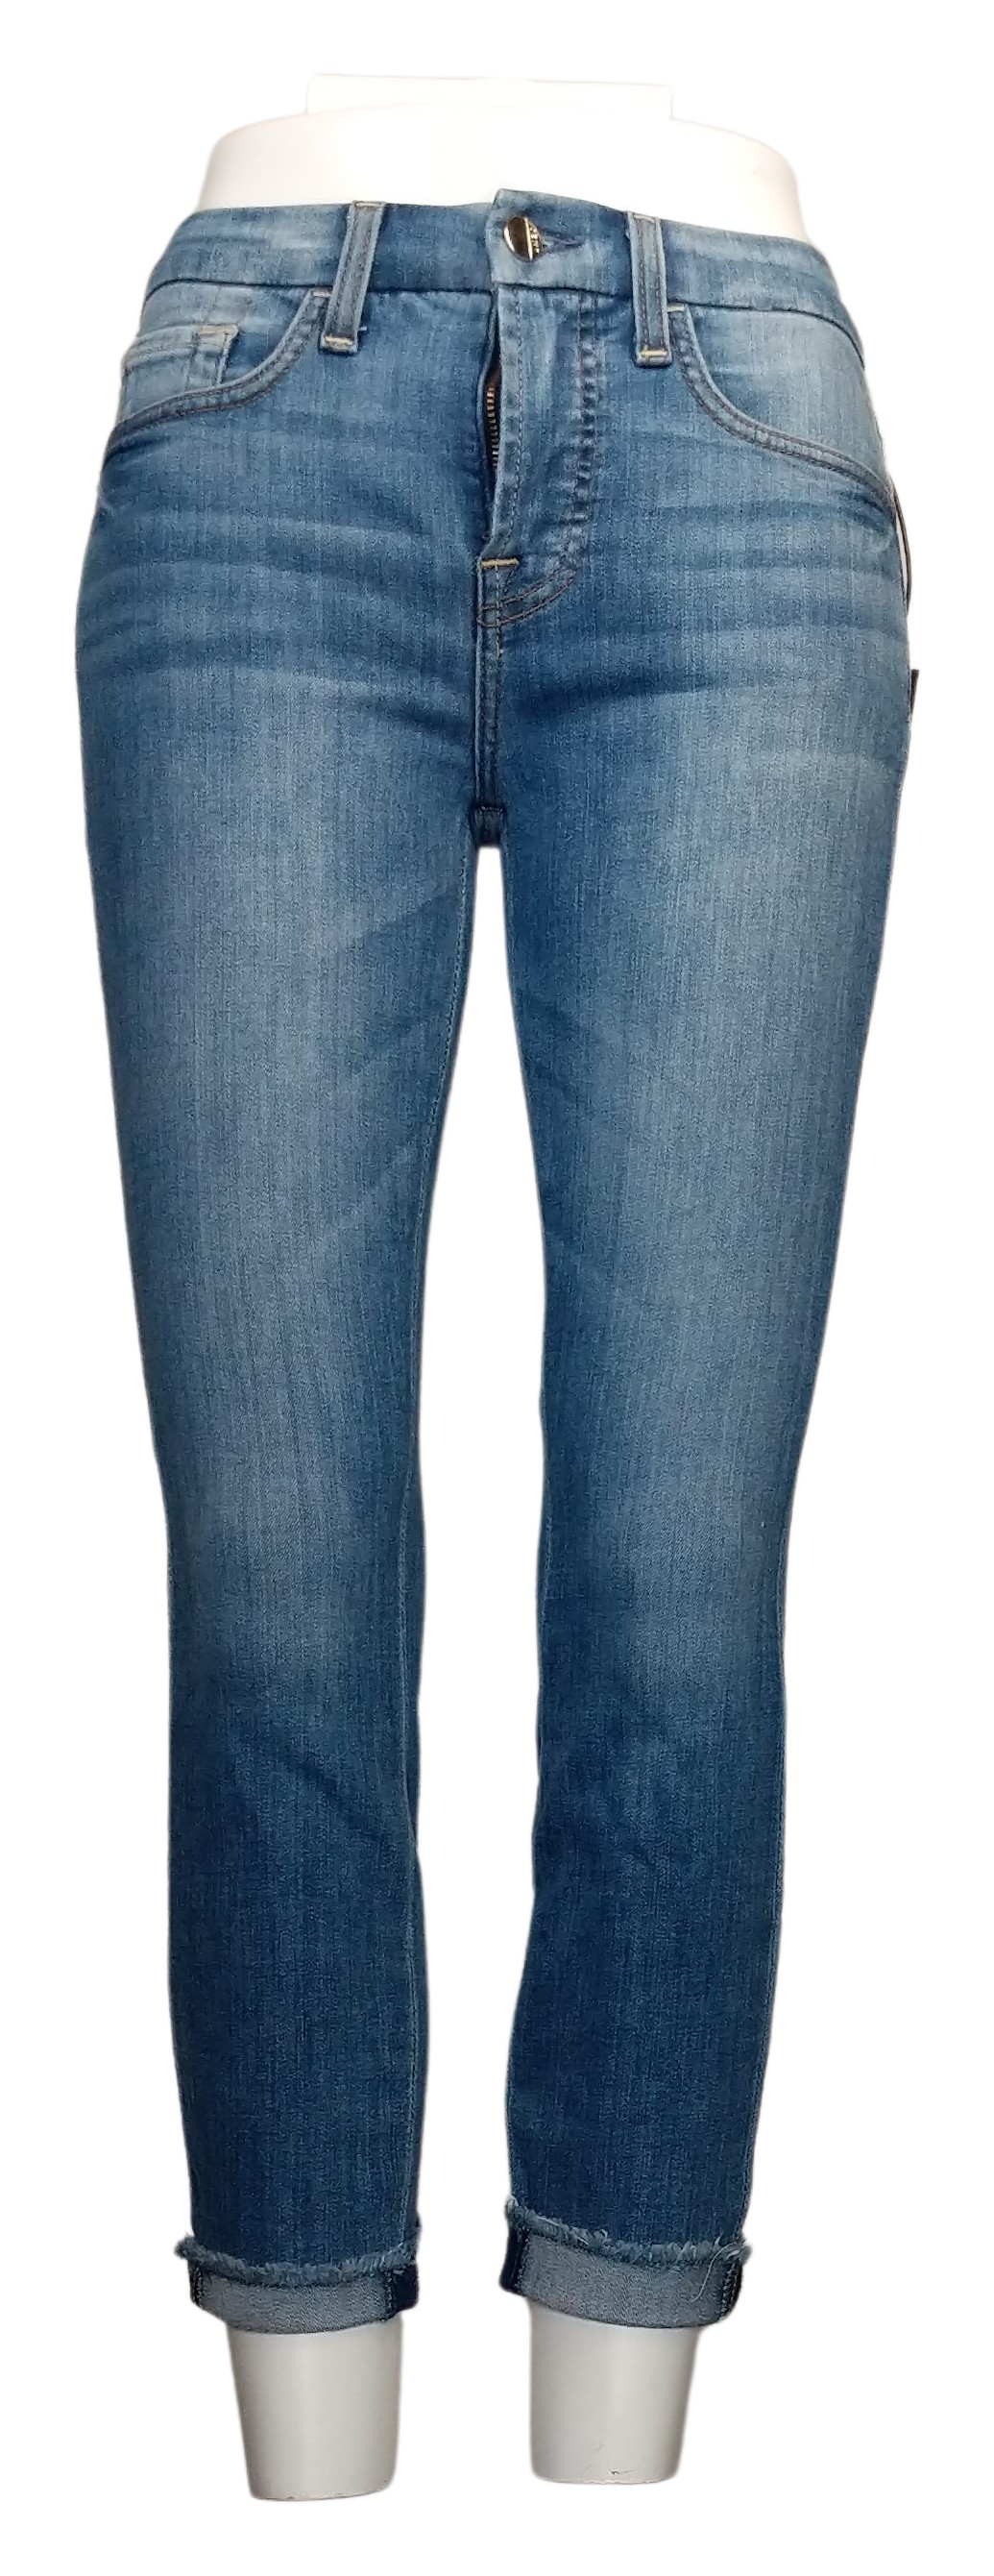 Jen7 by 7 For All Mankind Crop Skinny Jeans - La Quinta Women's Petite 00P Blue